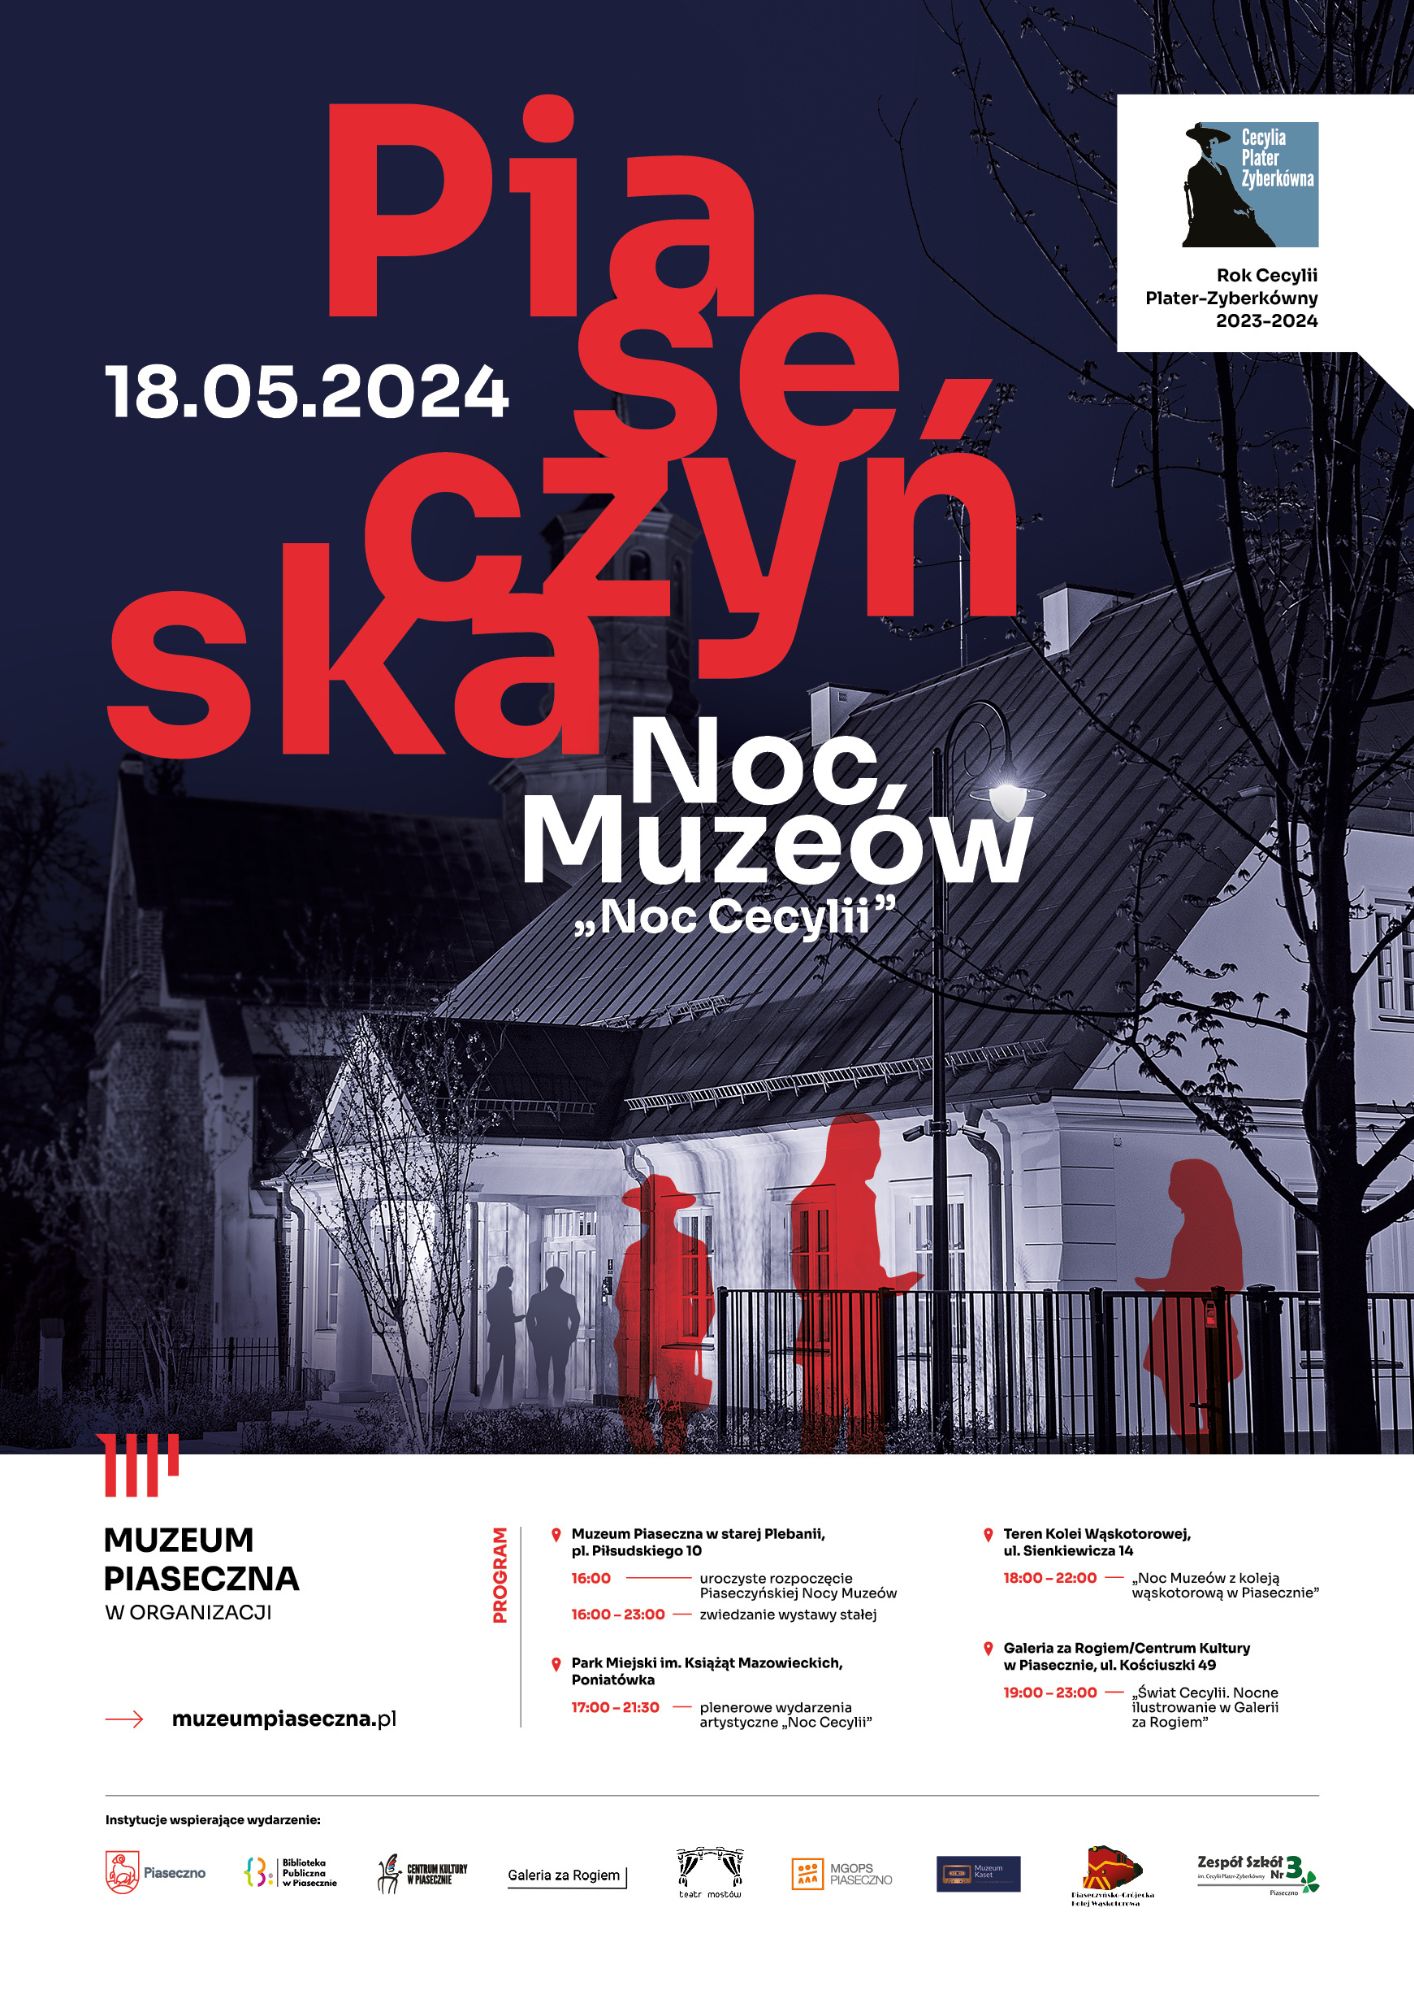 Piaseczyńska Noc Muzeów 2024